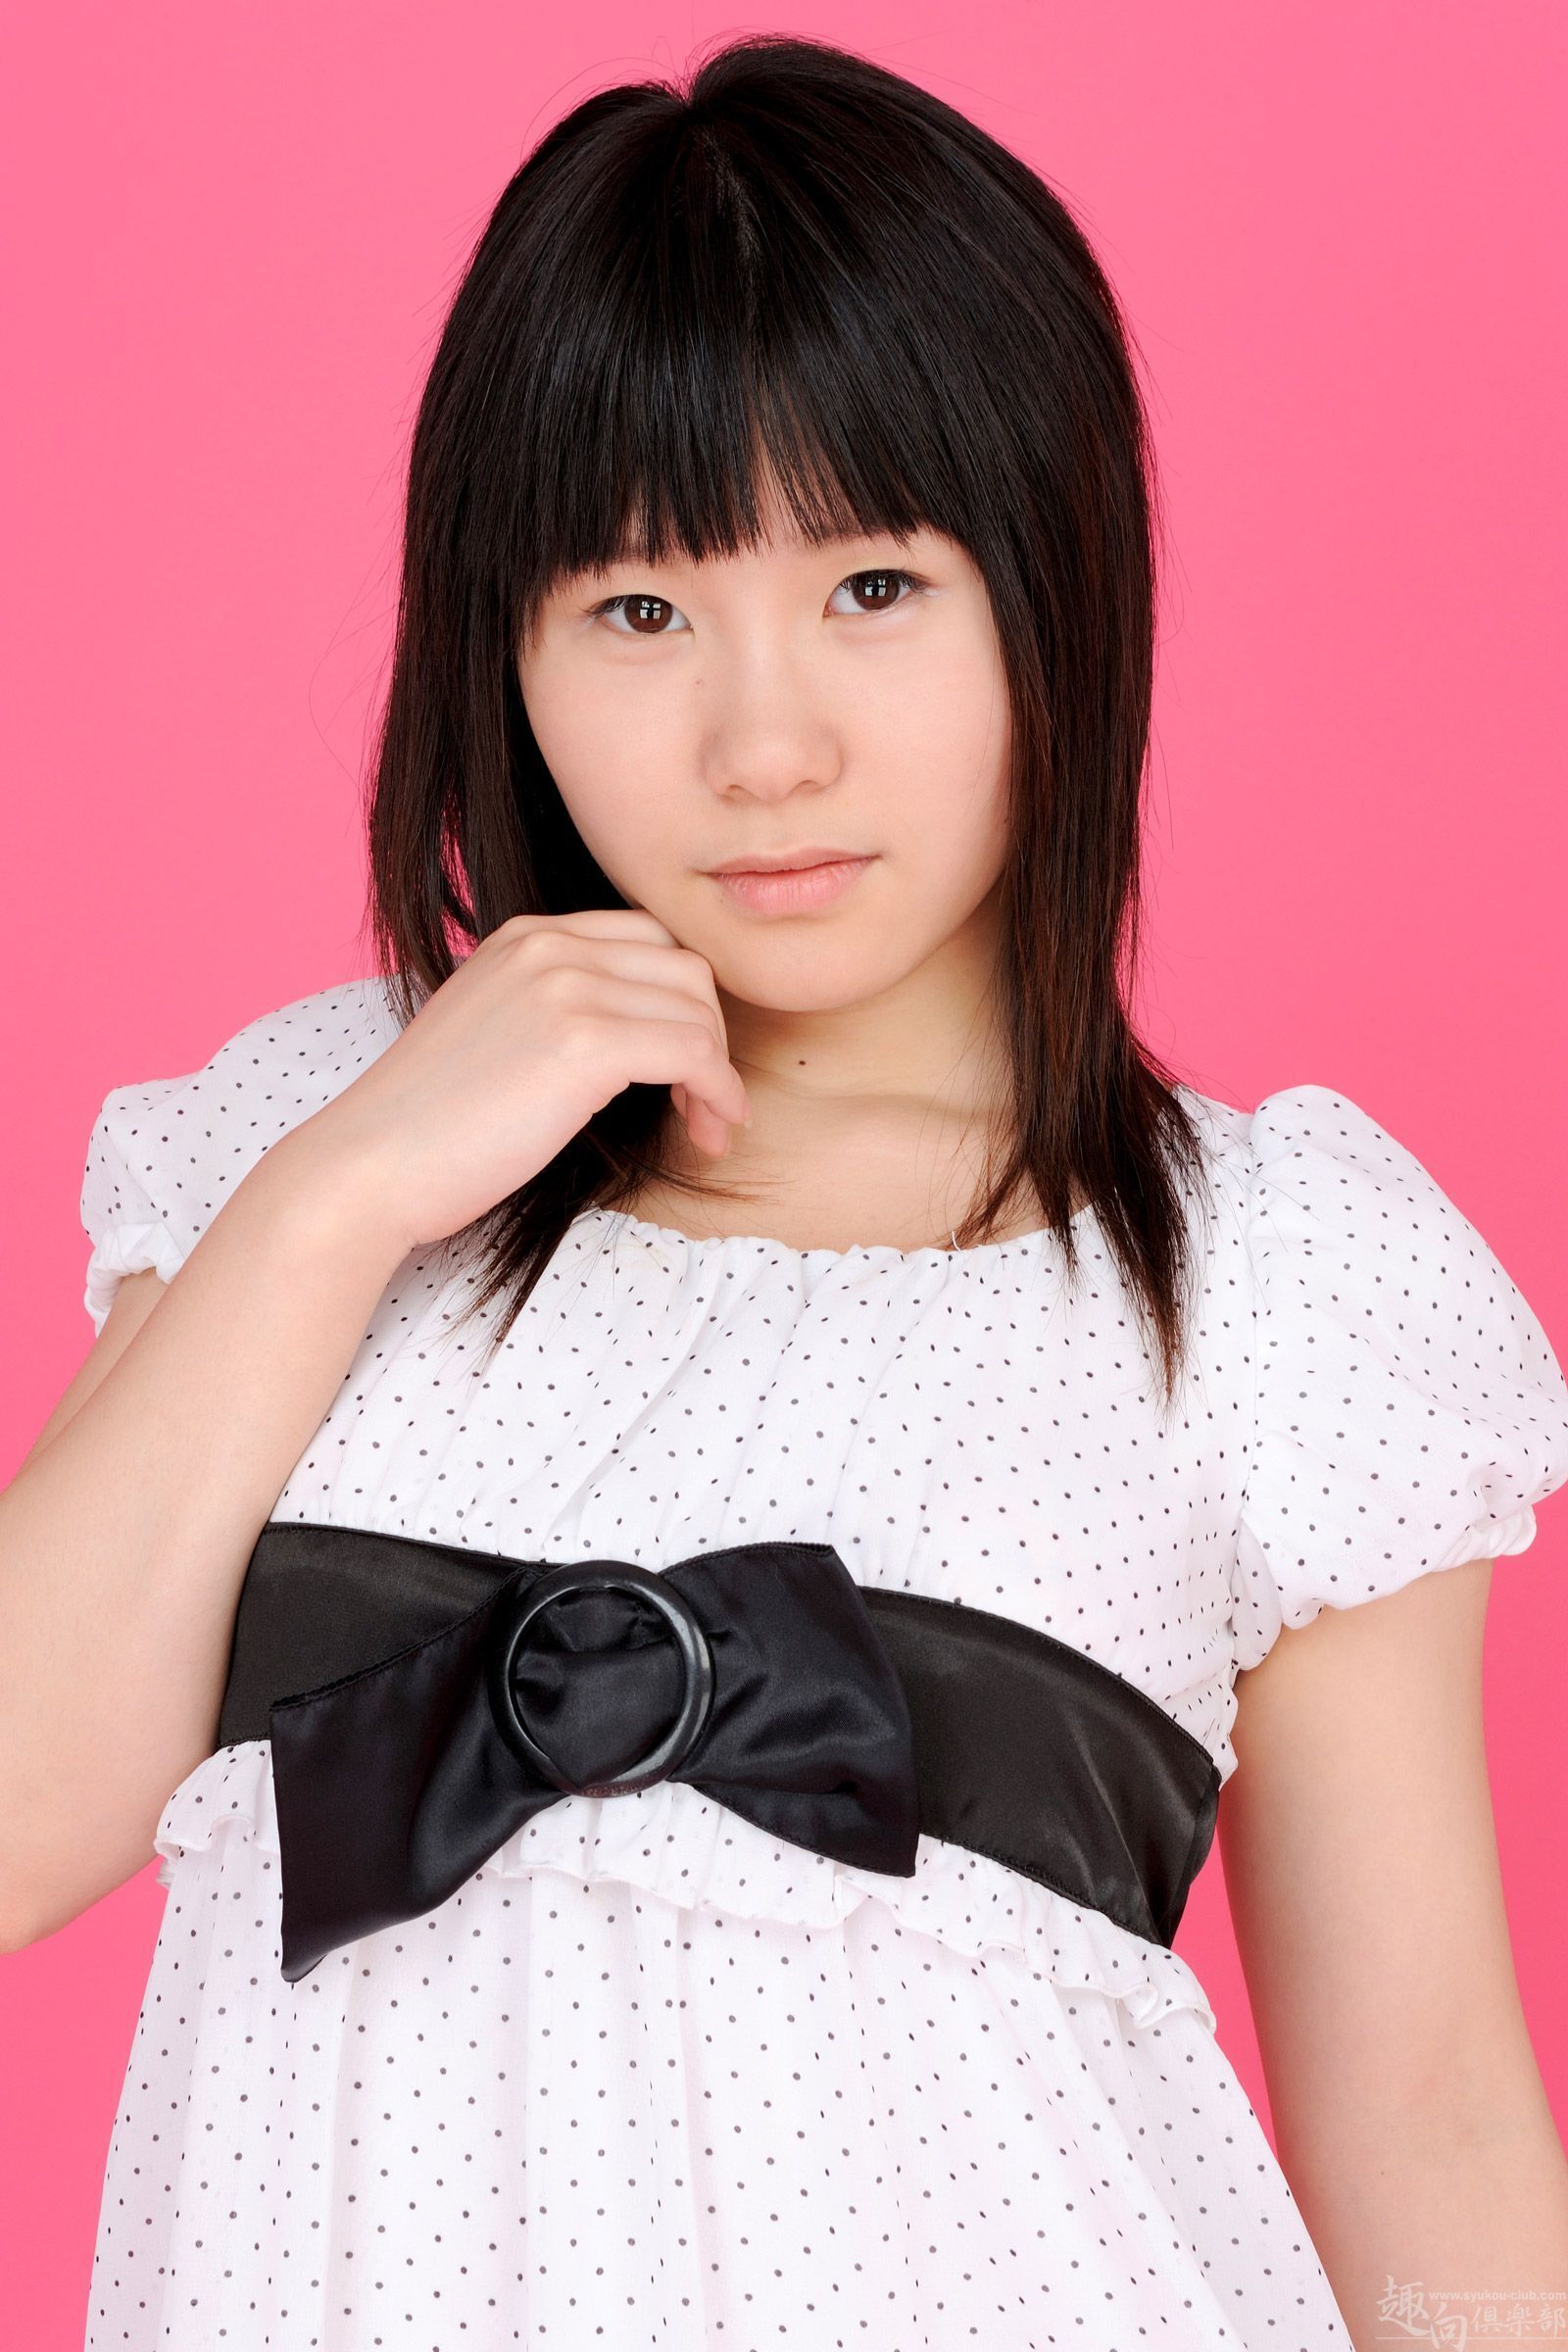 Syukou club, 18 years old, digi-girl104, November 29, 2012